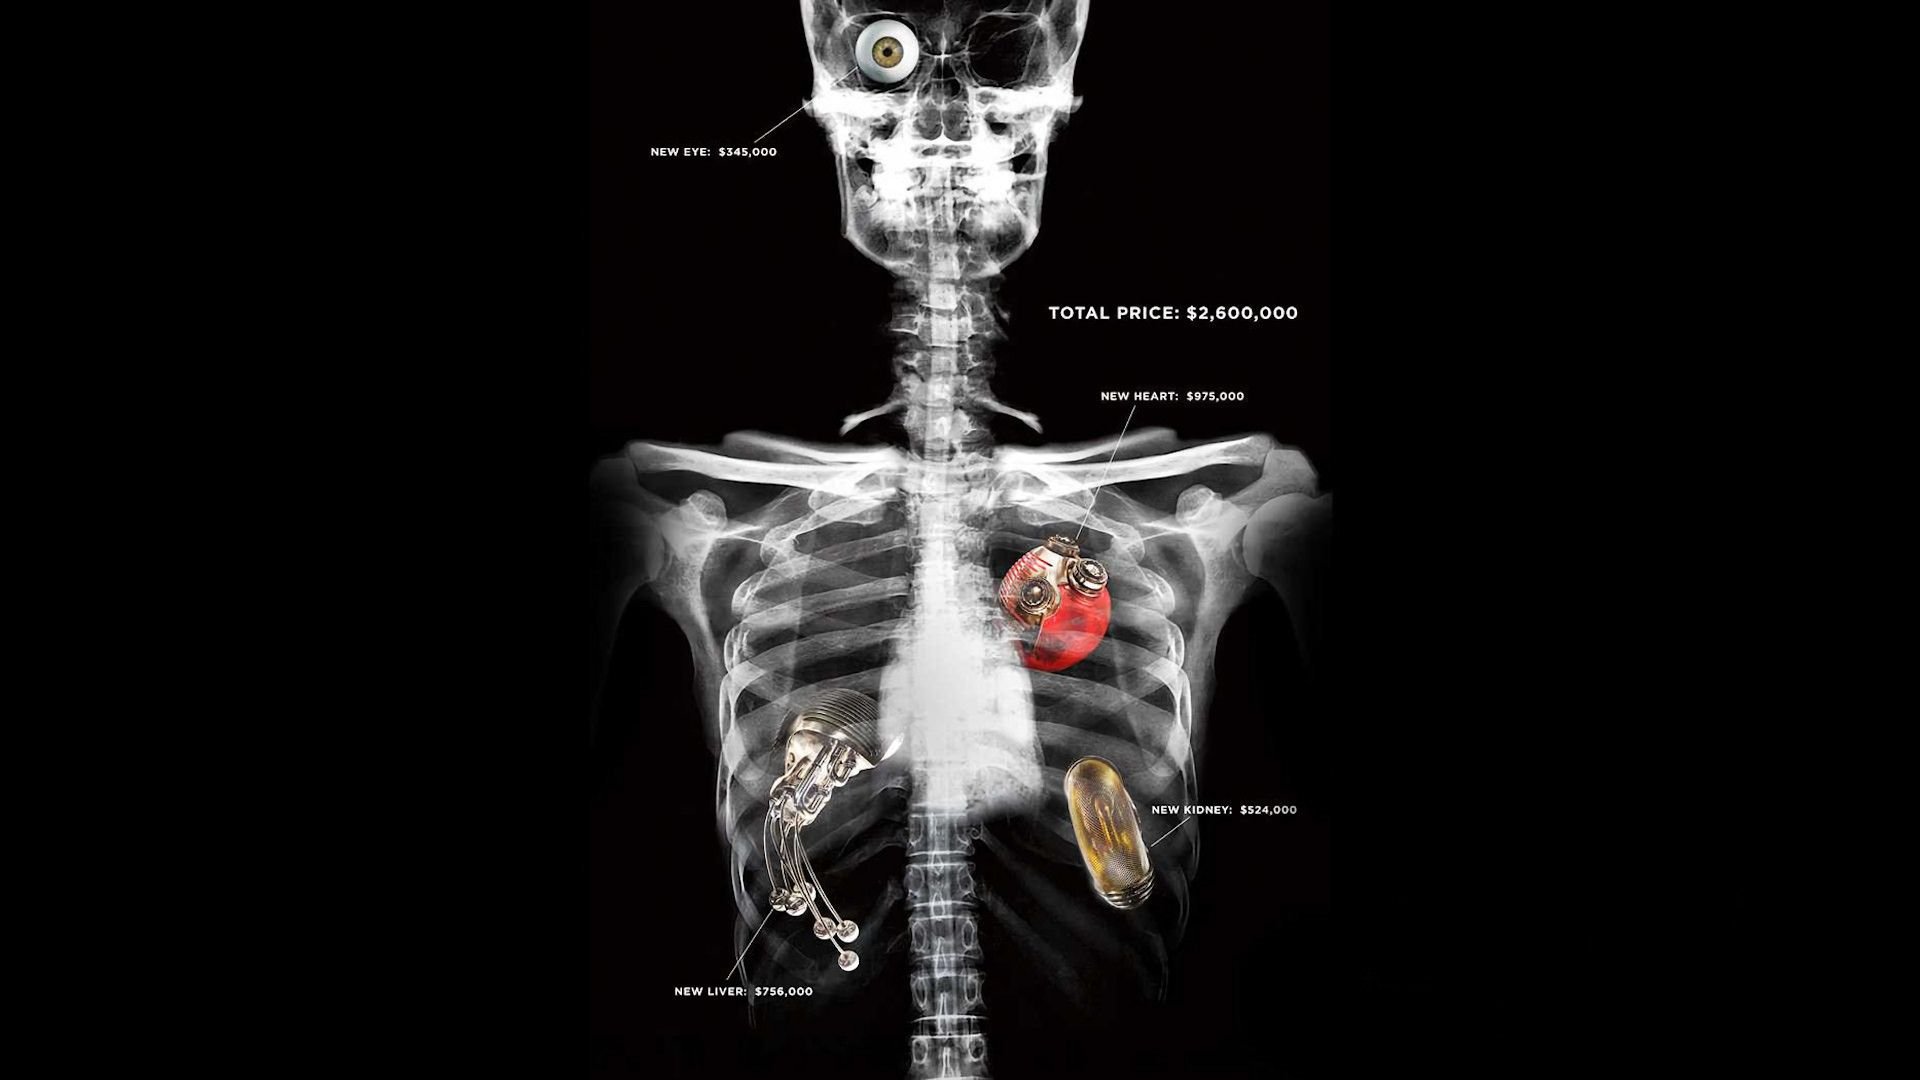 تصویر حیرت برانگیز از رادیولوژی انسان با جوارح مصنوعی